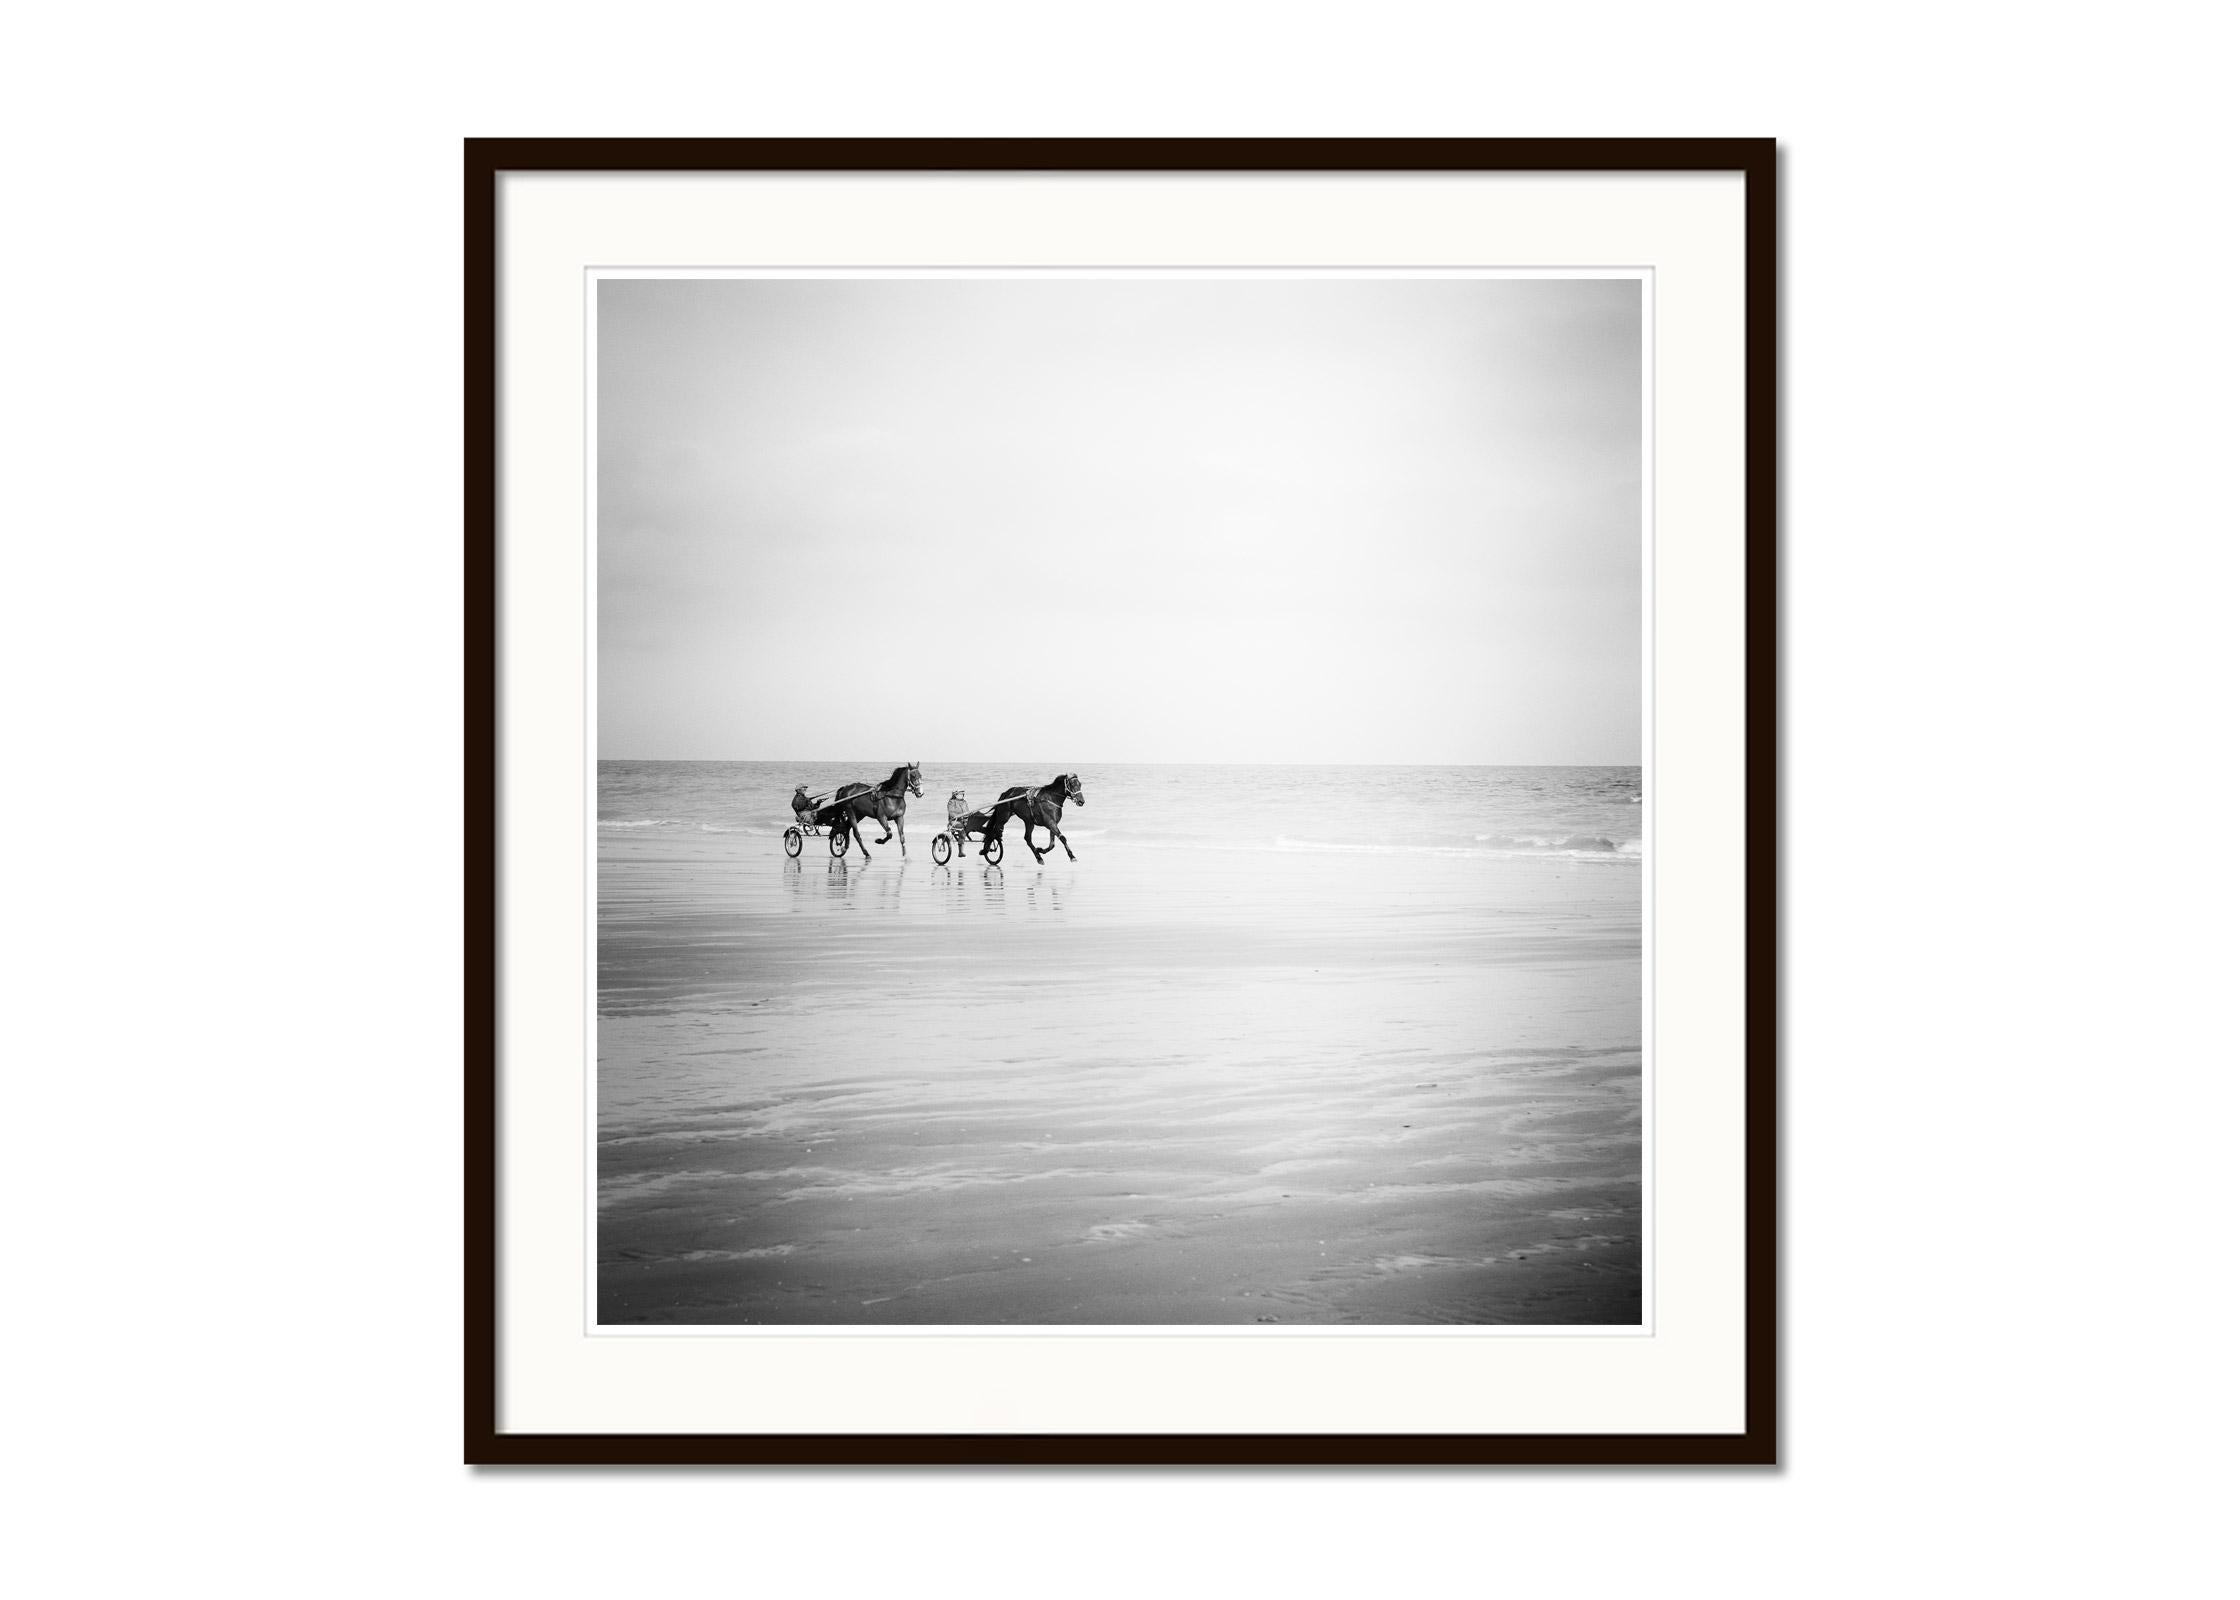 Harness Racing, Pferde am Strand, Frankreich, Schwarz-Weiß-Landschaftsfotografie (Grau), Landscape Photograph, von Gerald Berghammer